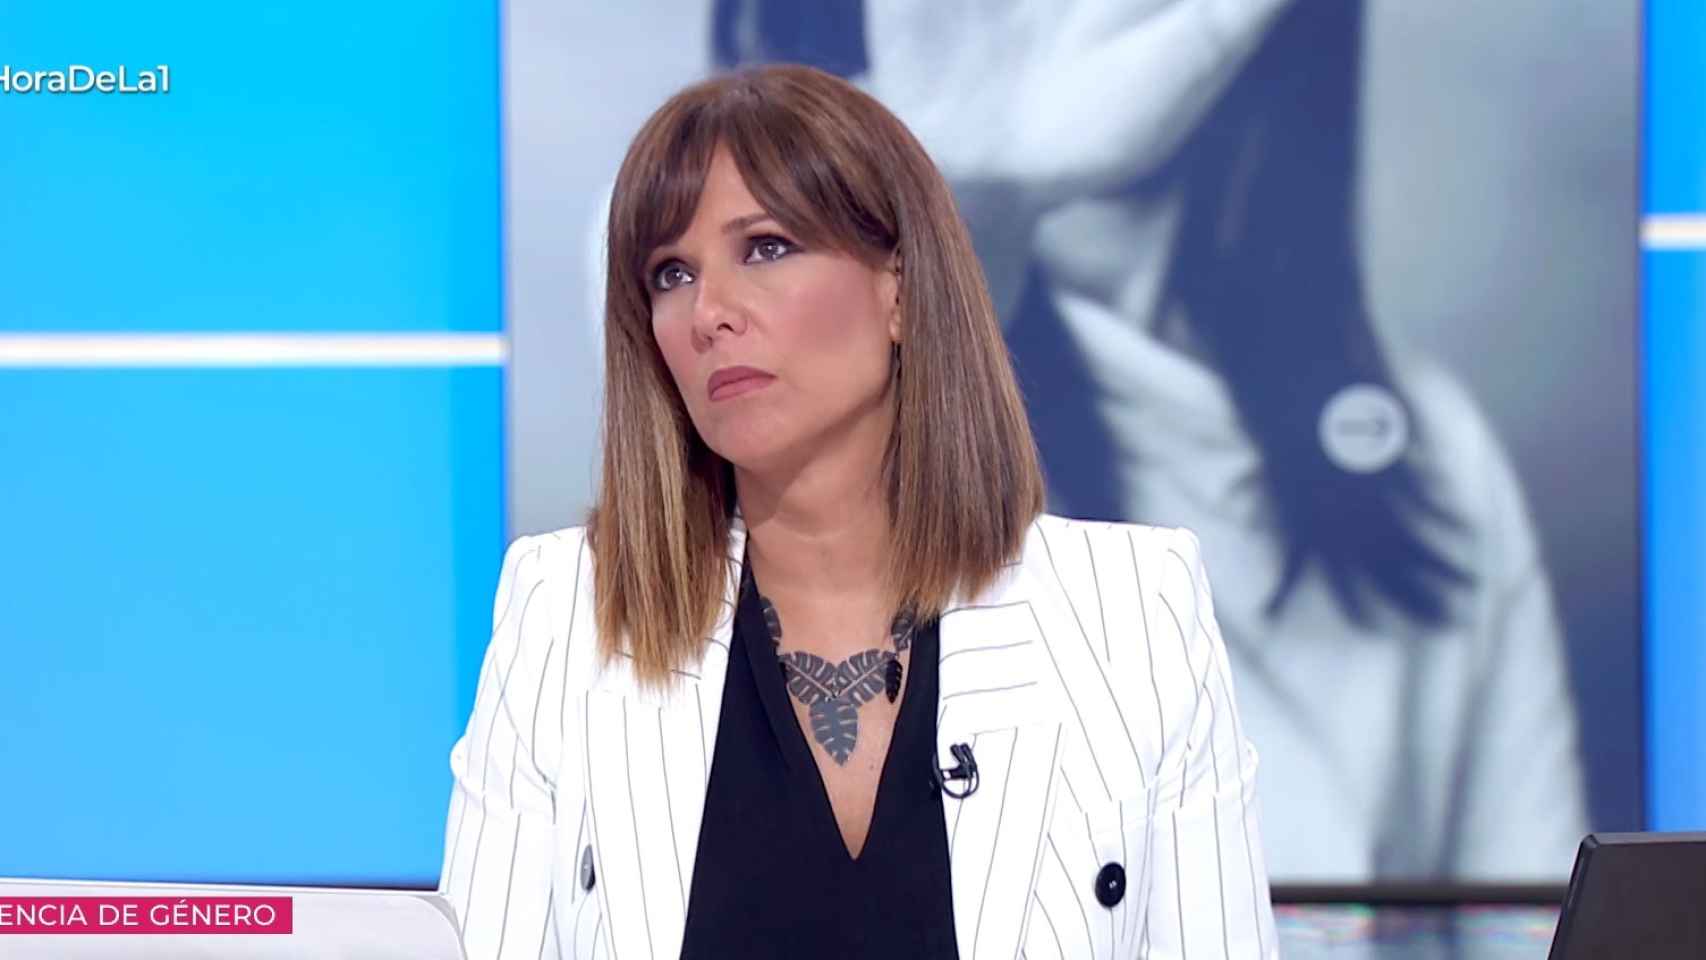 Mónica López intervino varias veces para rebatir el discurso de Villalobos.